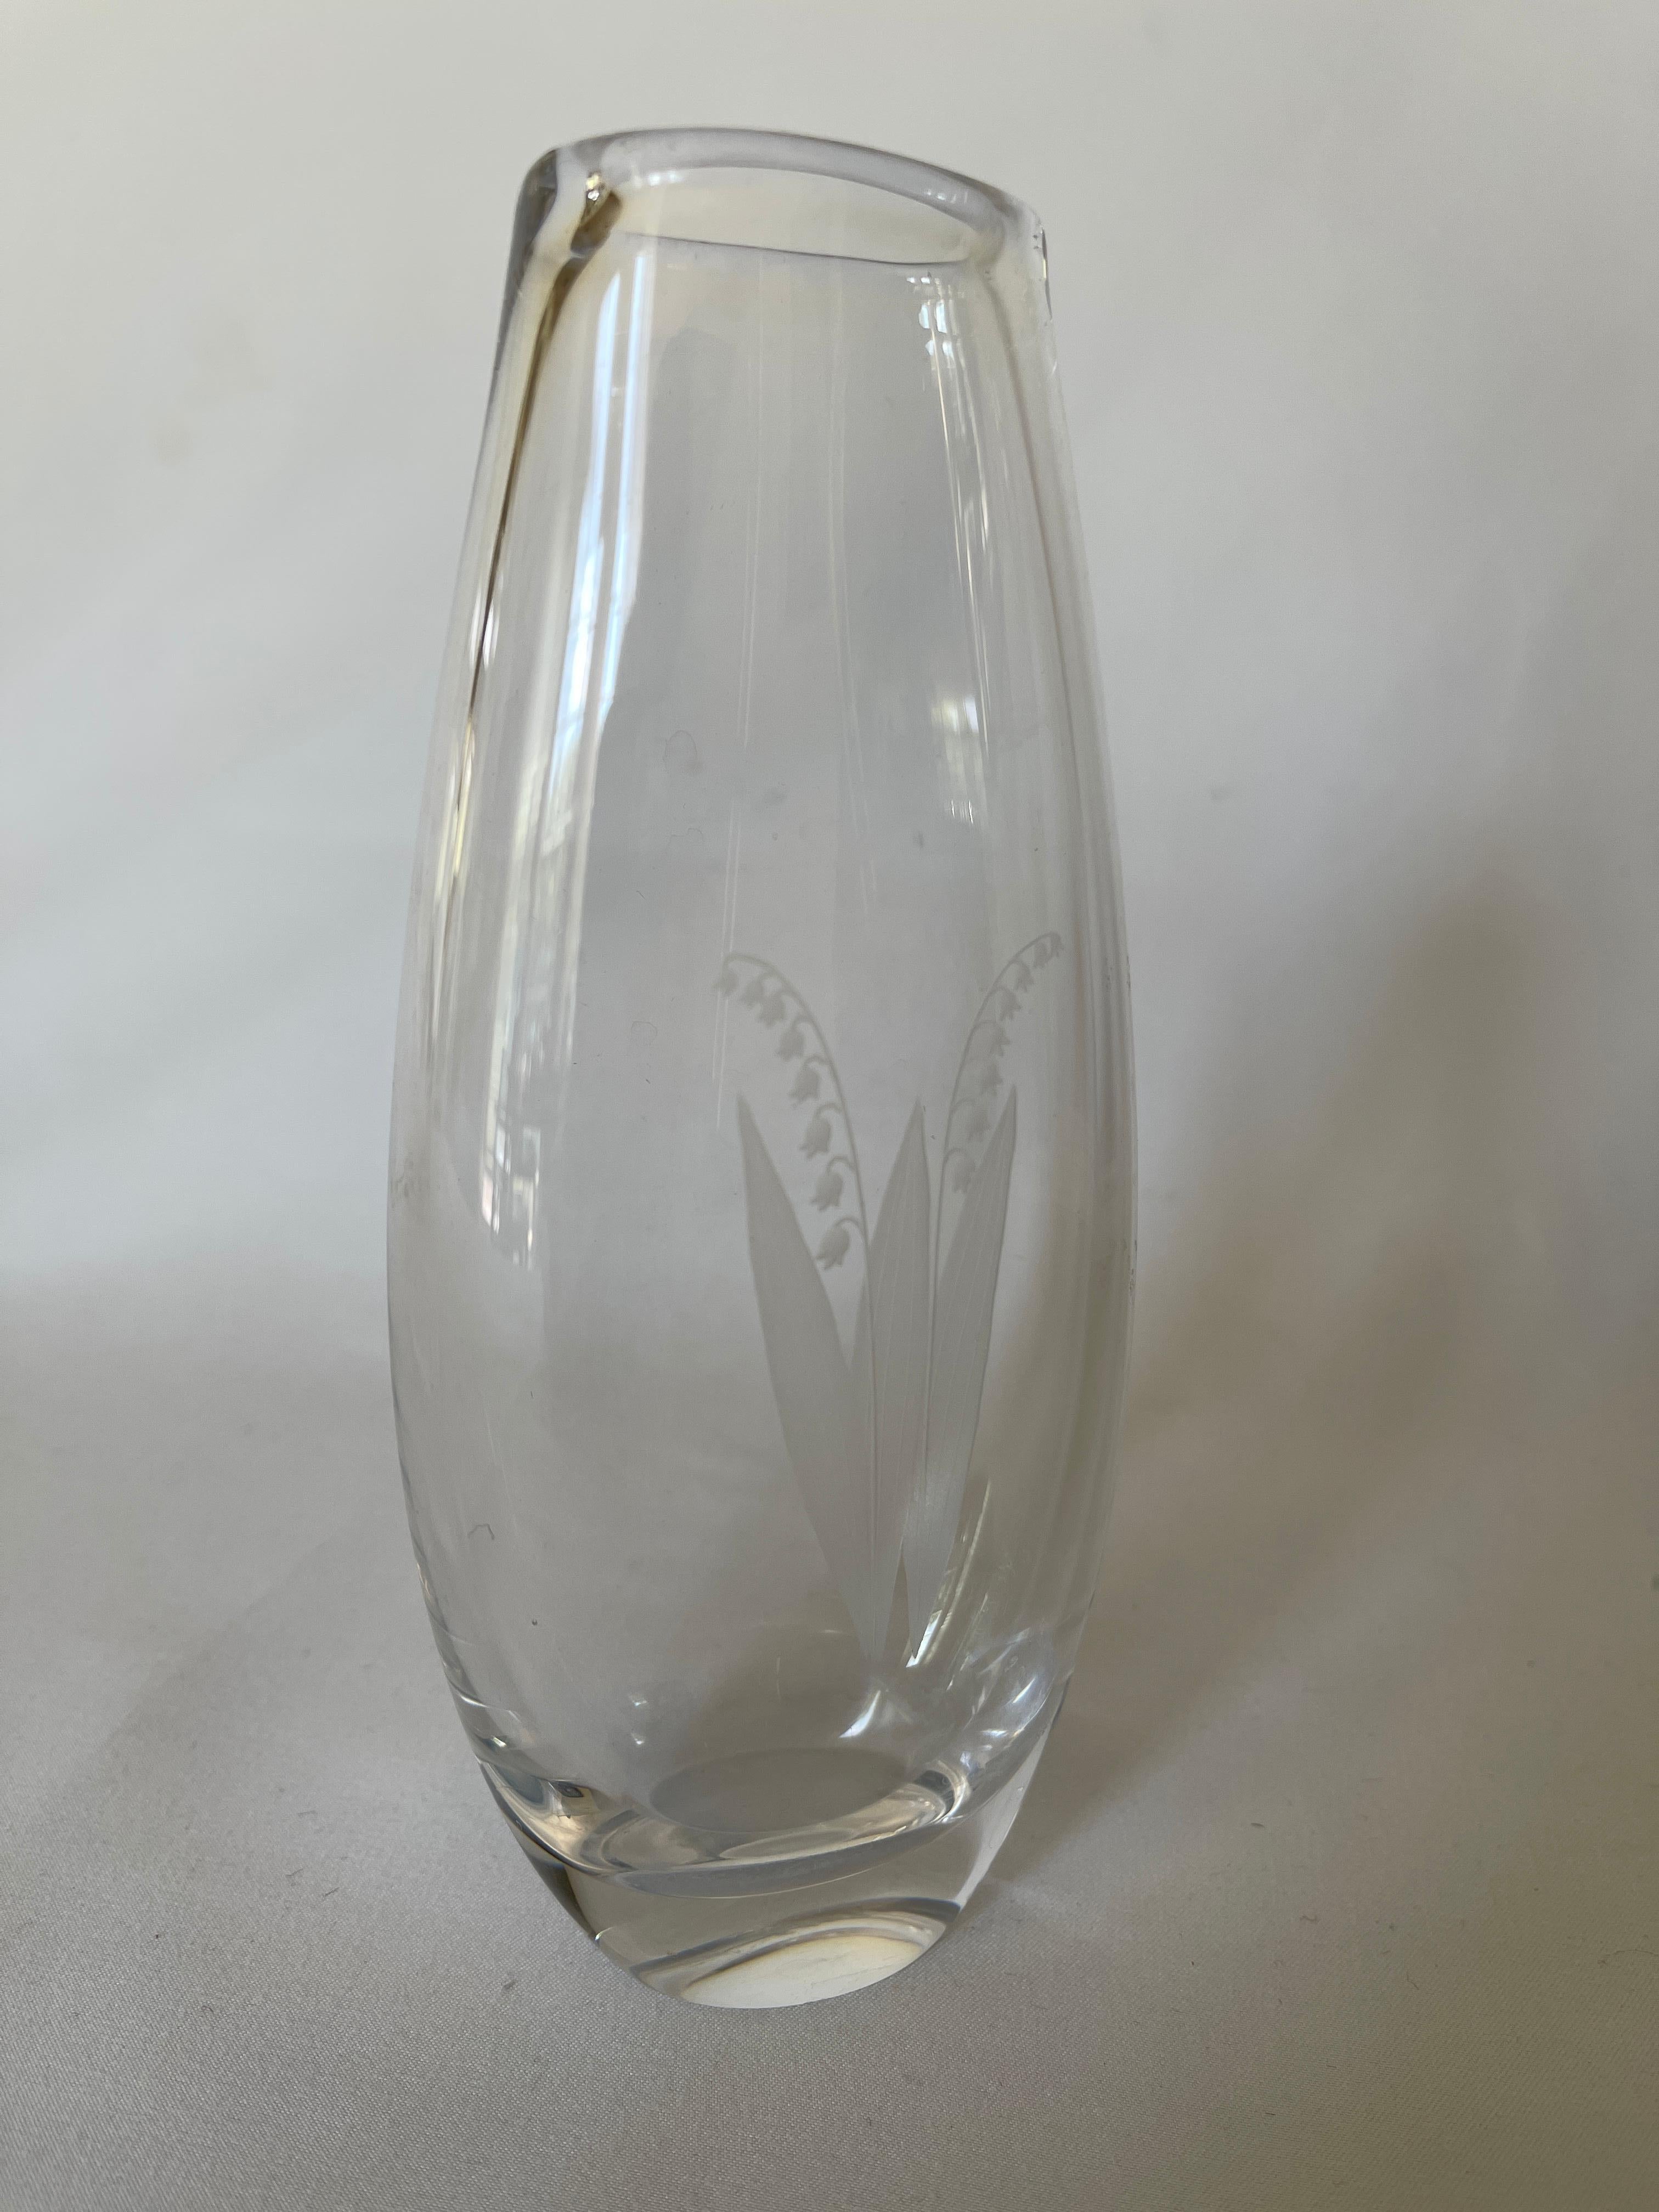 Vase en verre suédois conçu par Sven Palmqvist (1906-1984), avec une gravure sur le verre. 
Motif de fleur de muguet.  Signature et numéro incisés sur le fond, 
Orrefors  P 371016
